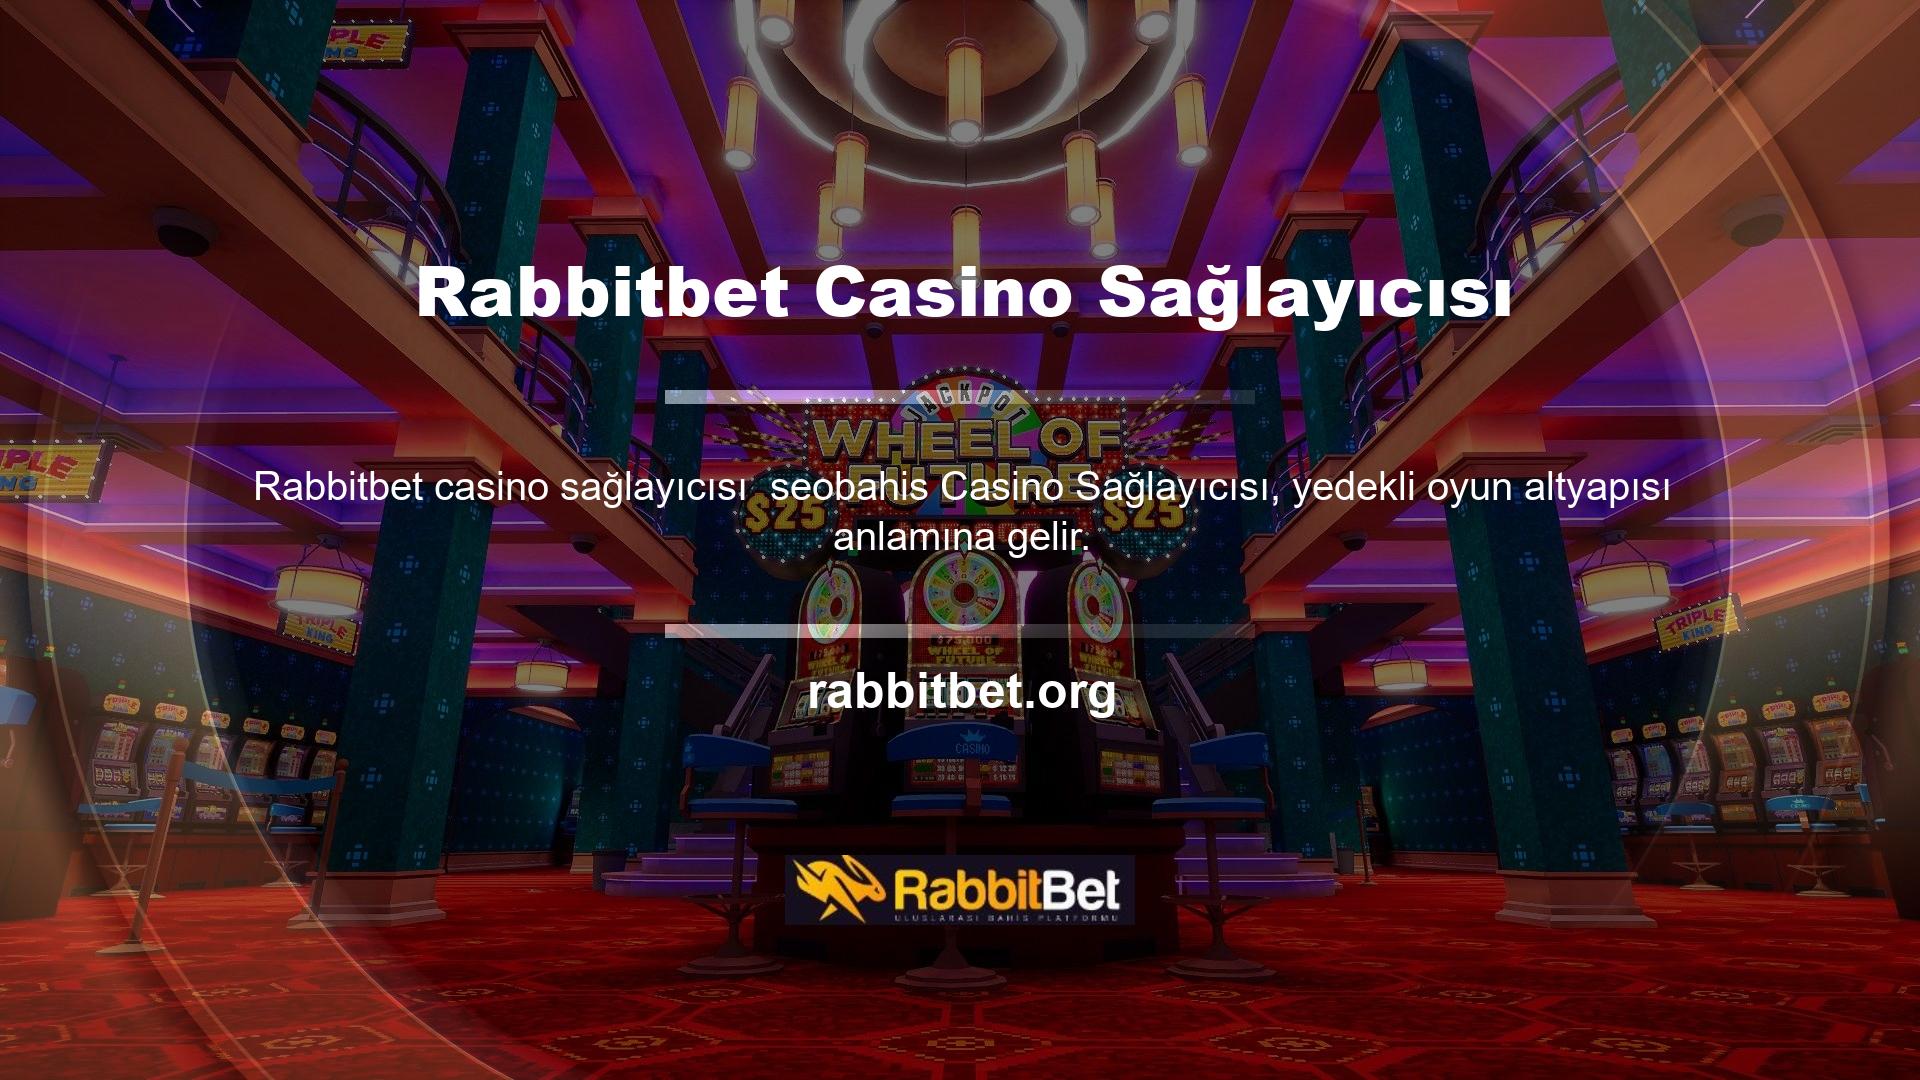 Rabbitbet yönetim ekibi oyun sağlayıcılarını seçmek ve çeşitli şirketlerle anlaşmalar imzalamak için çok çaba harcadı